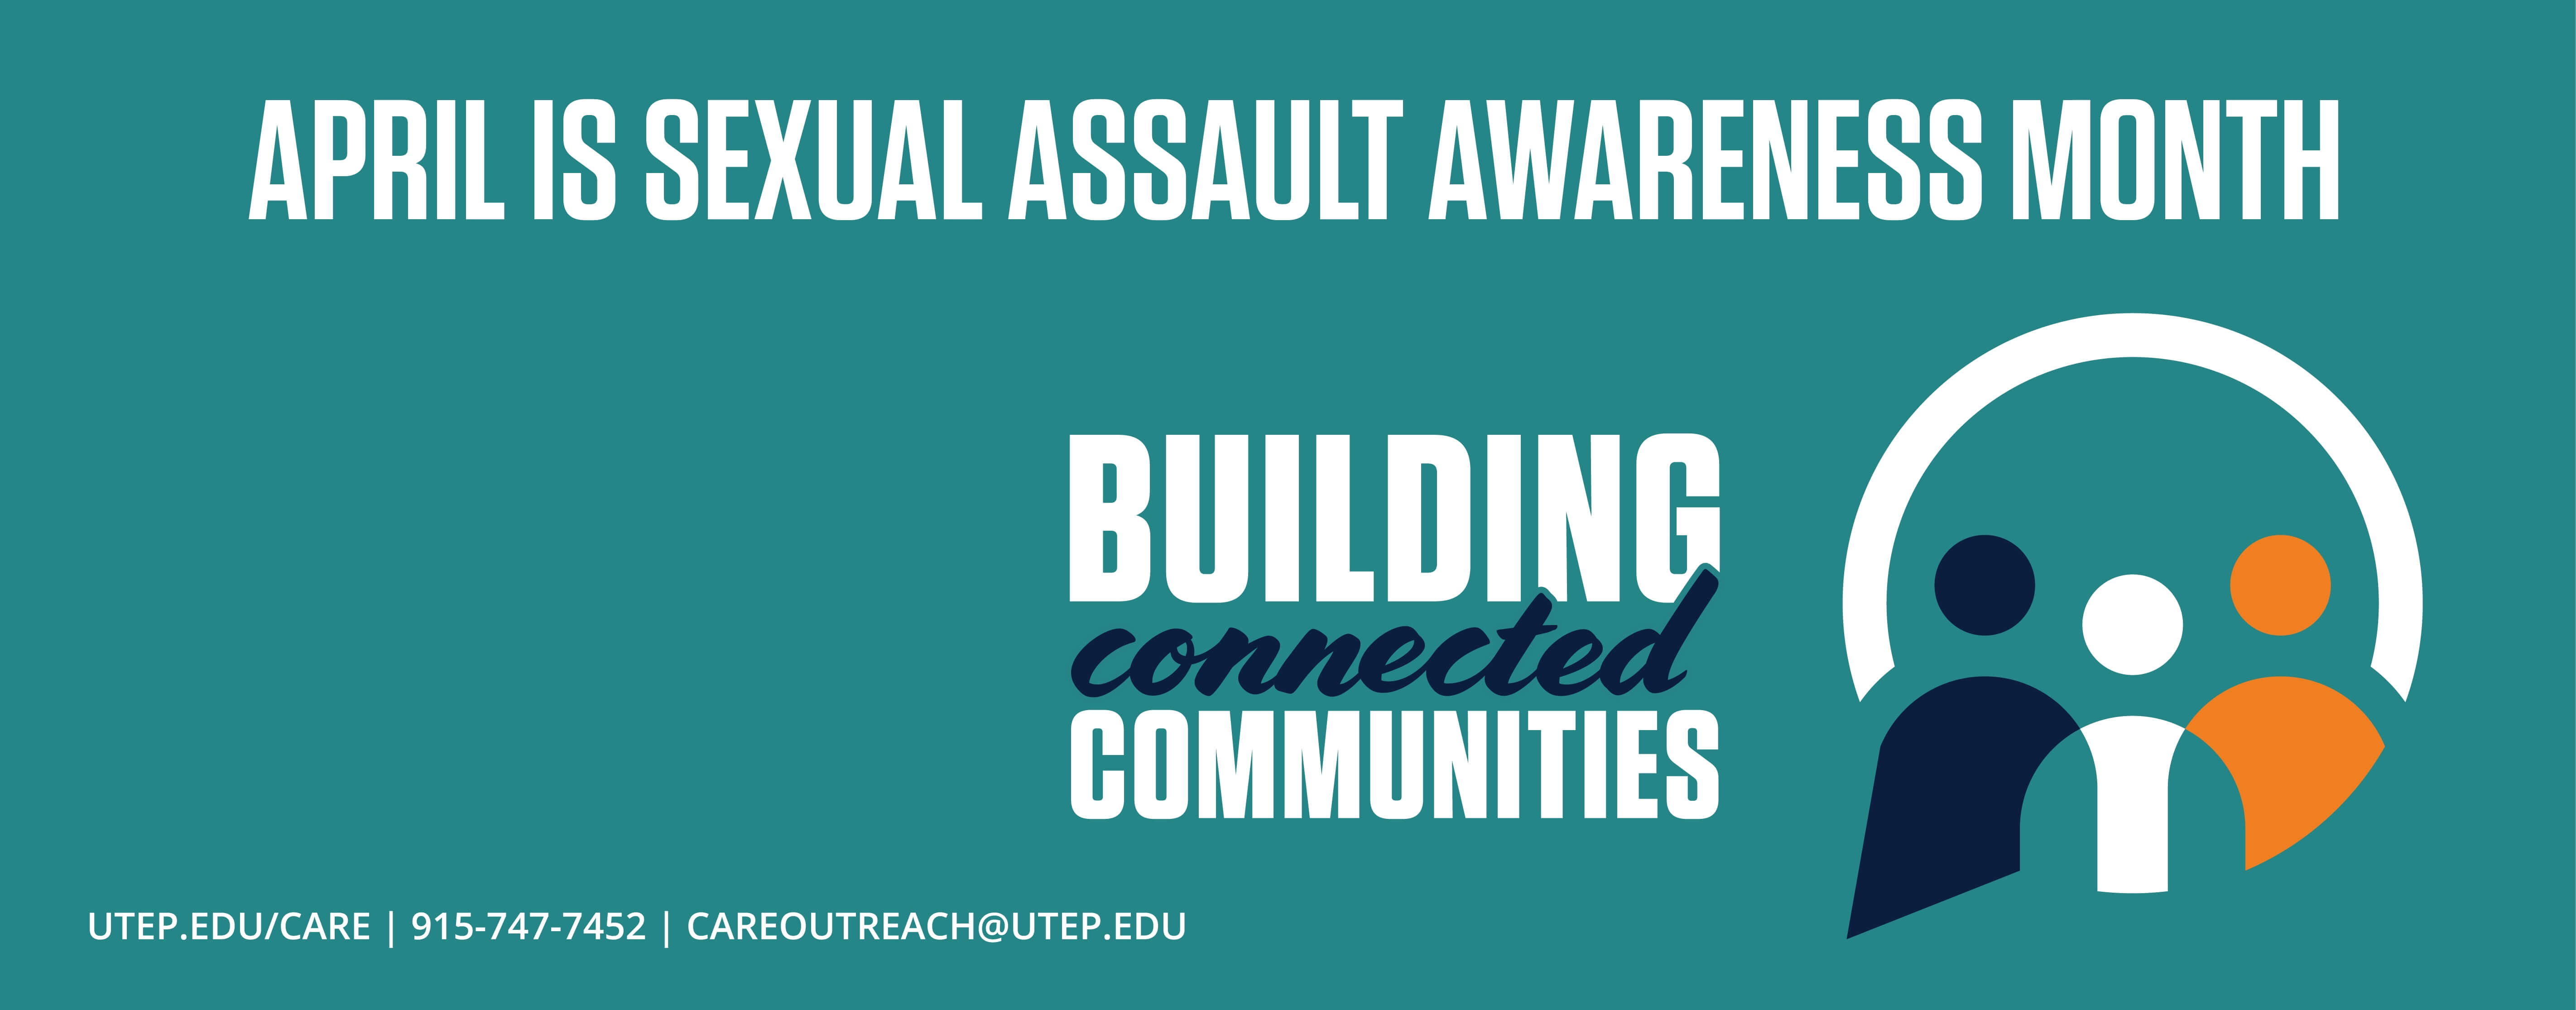 Sexual Assault Awareness Month 